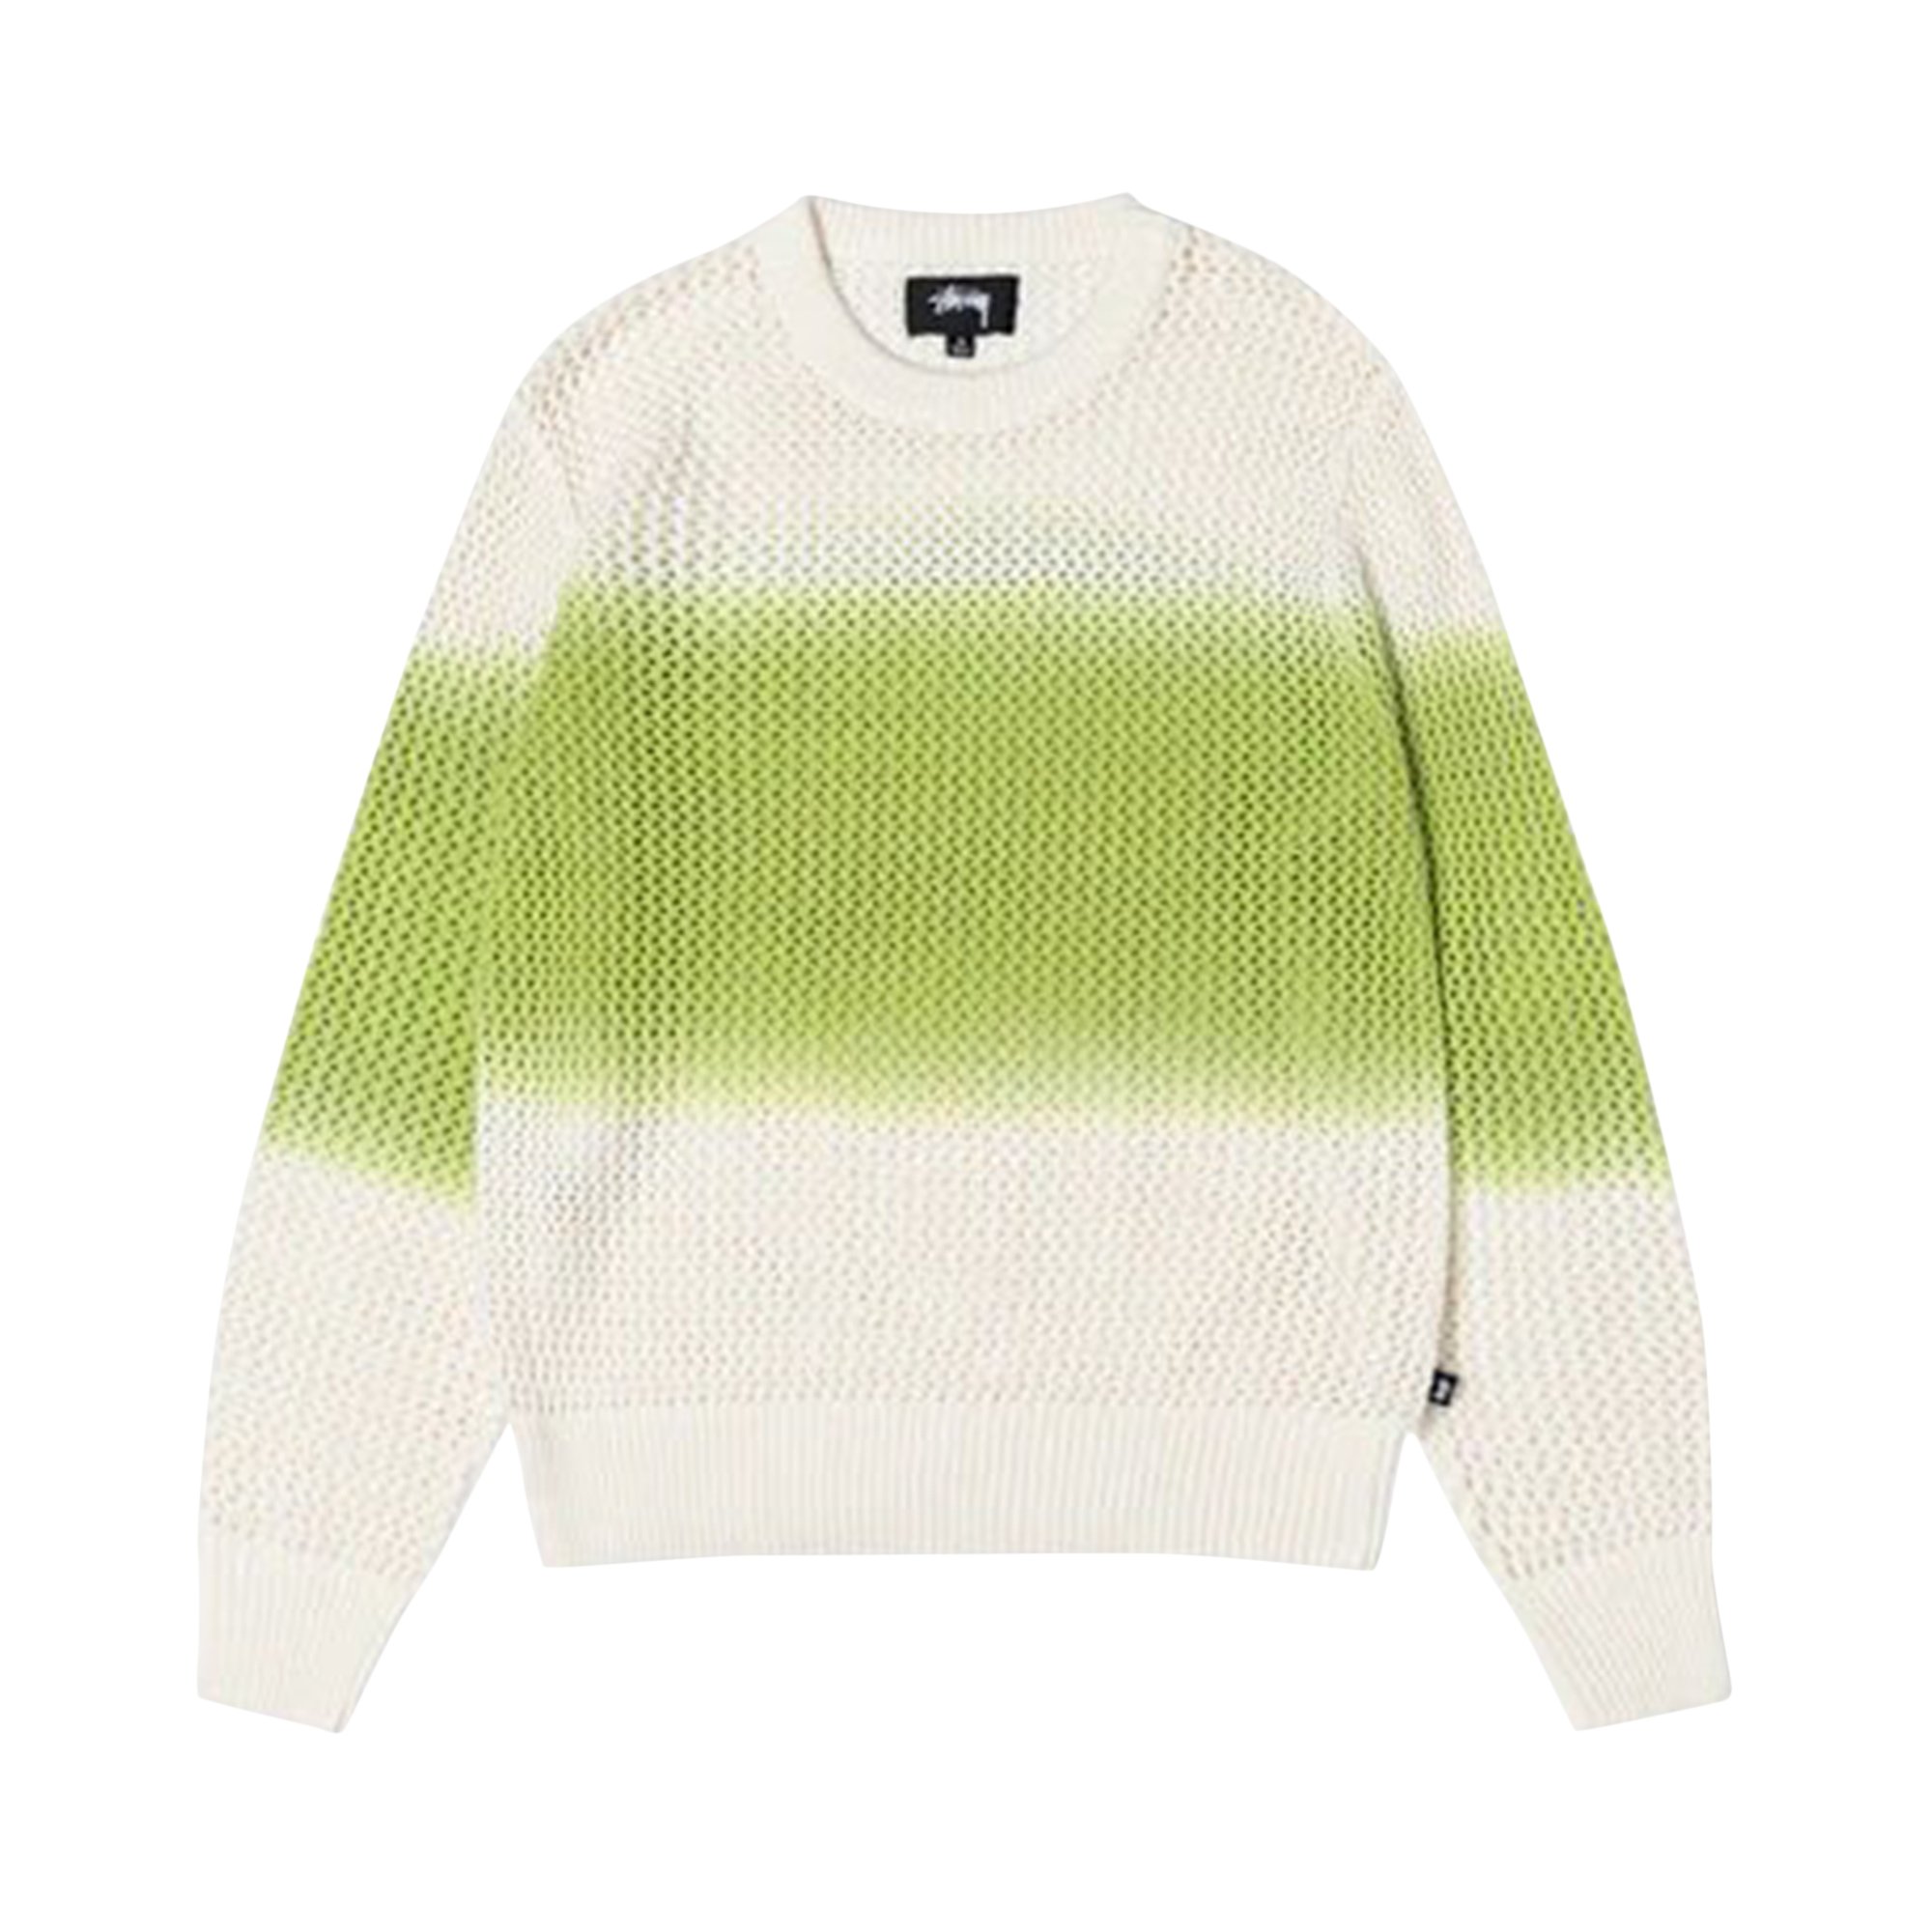 Свободный свитер Stussy, окрашенный в пигмент, цвет Ярко-зеленый